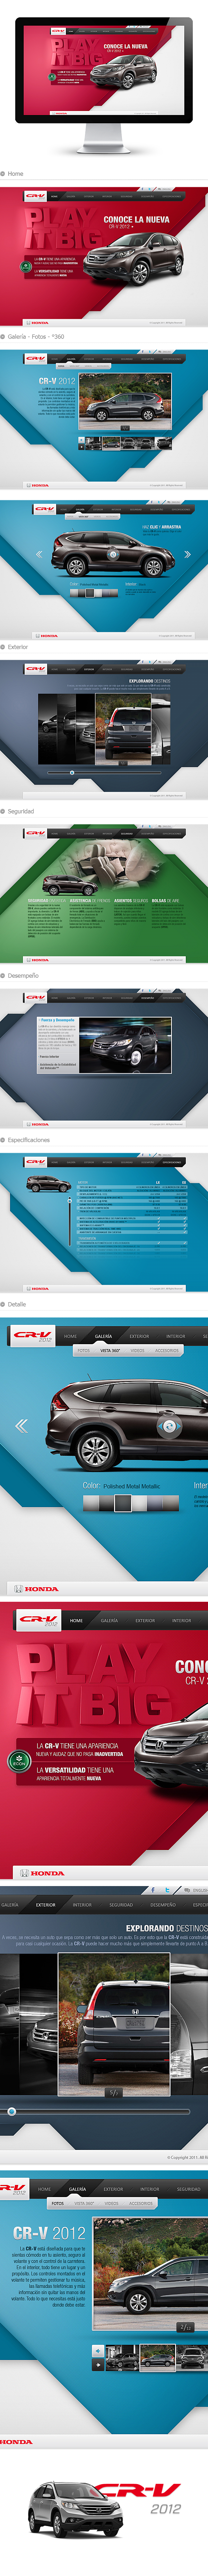 CR - V 2012 - Honda ...